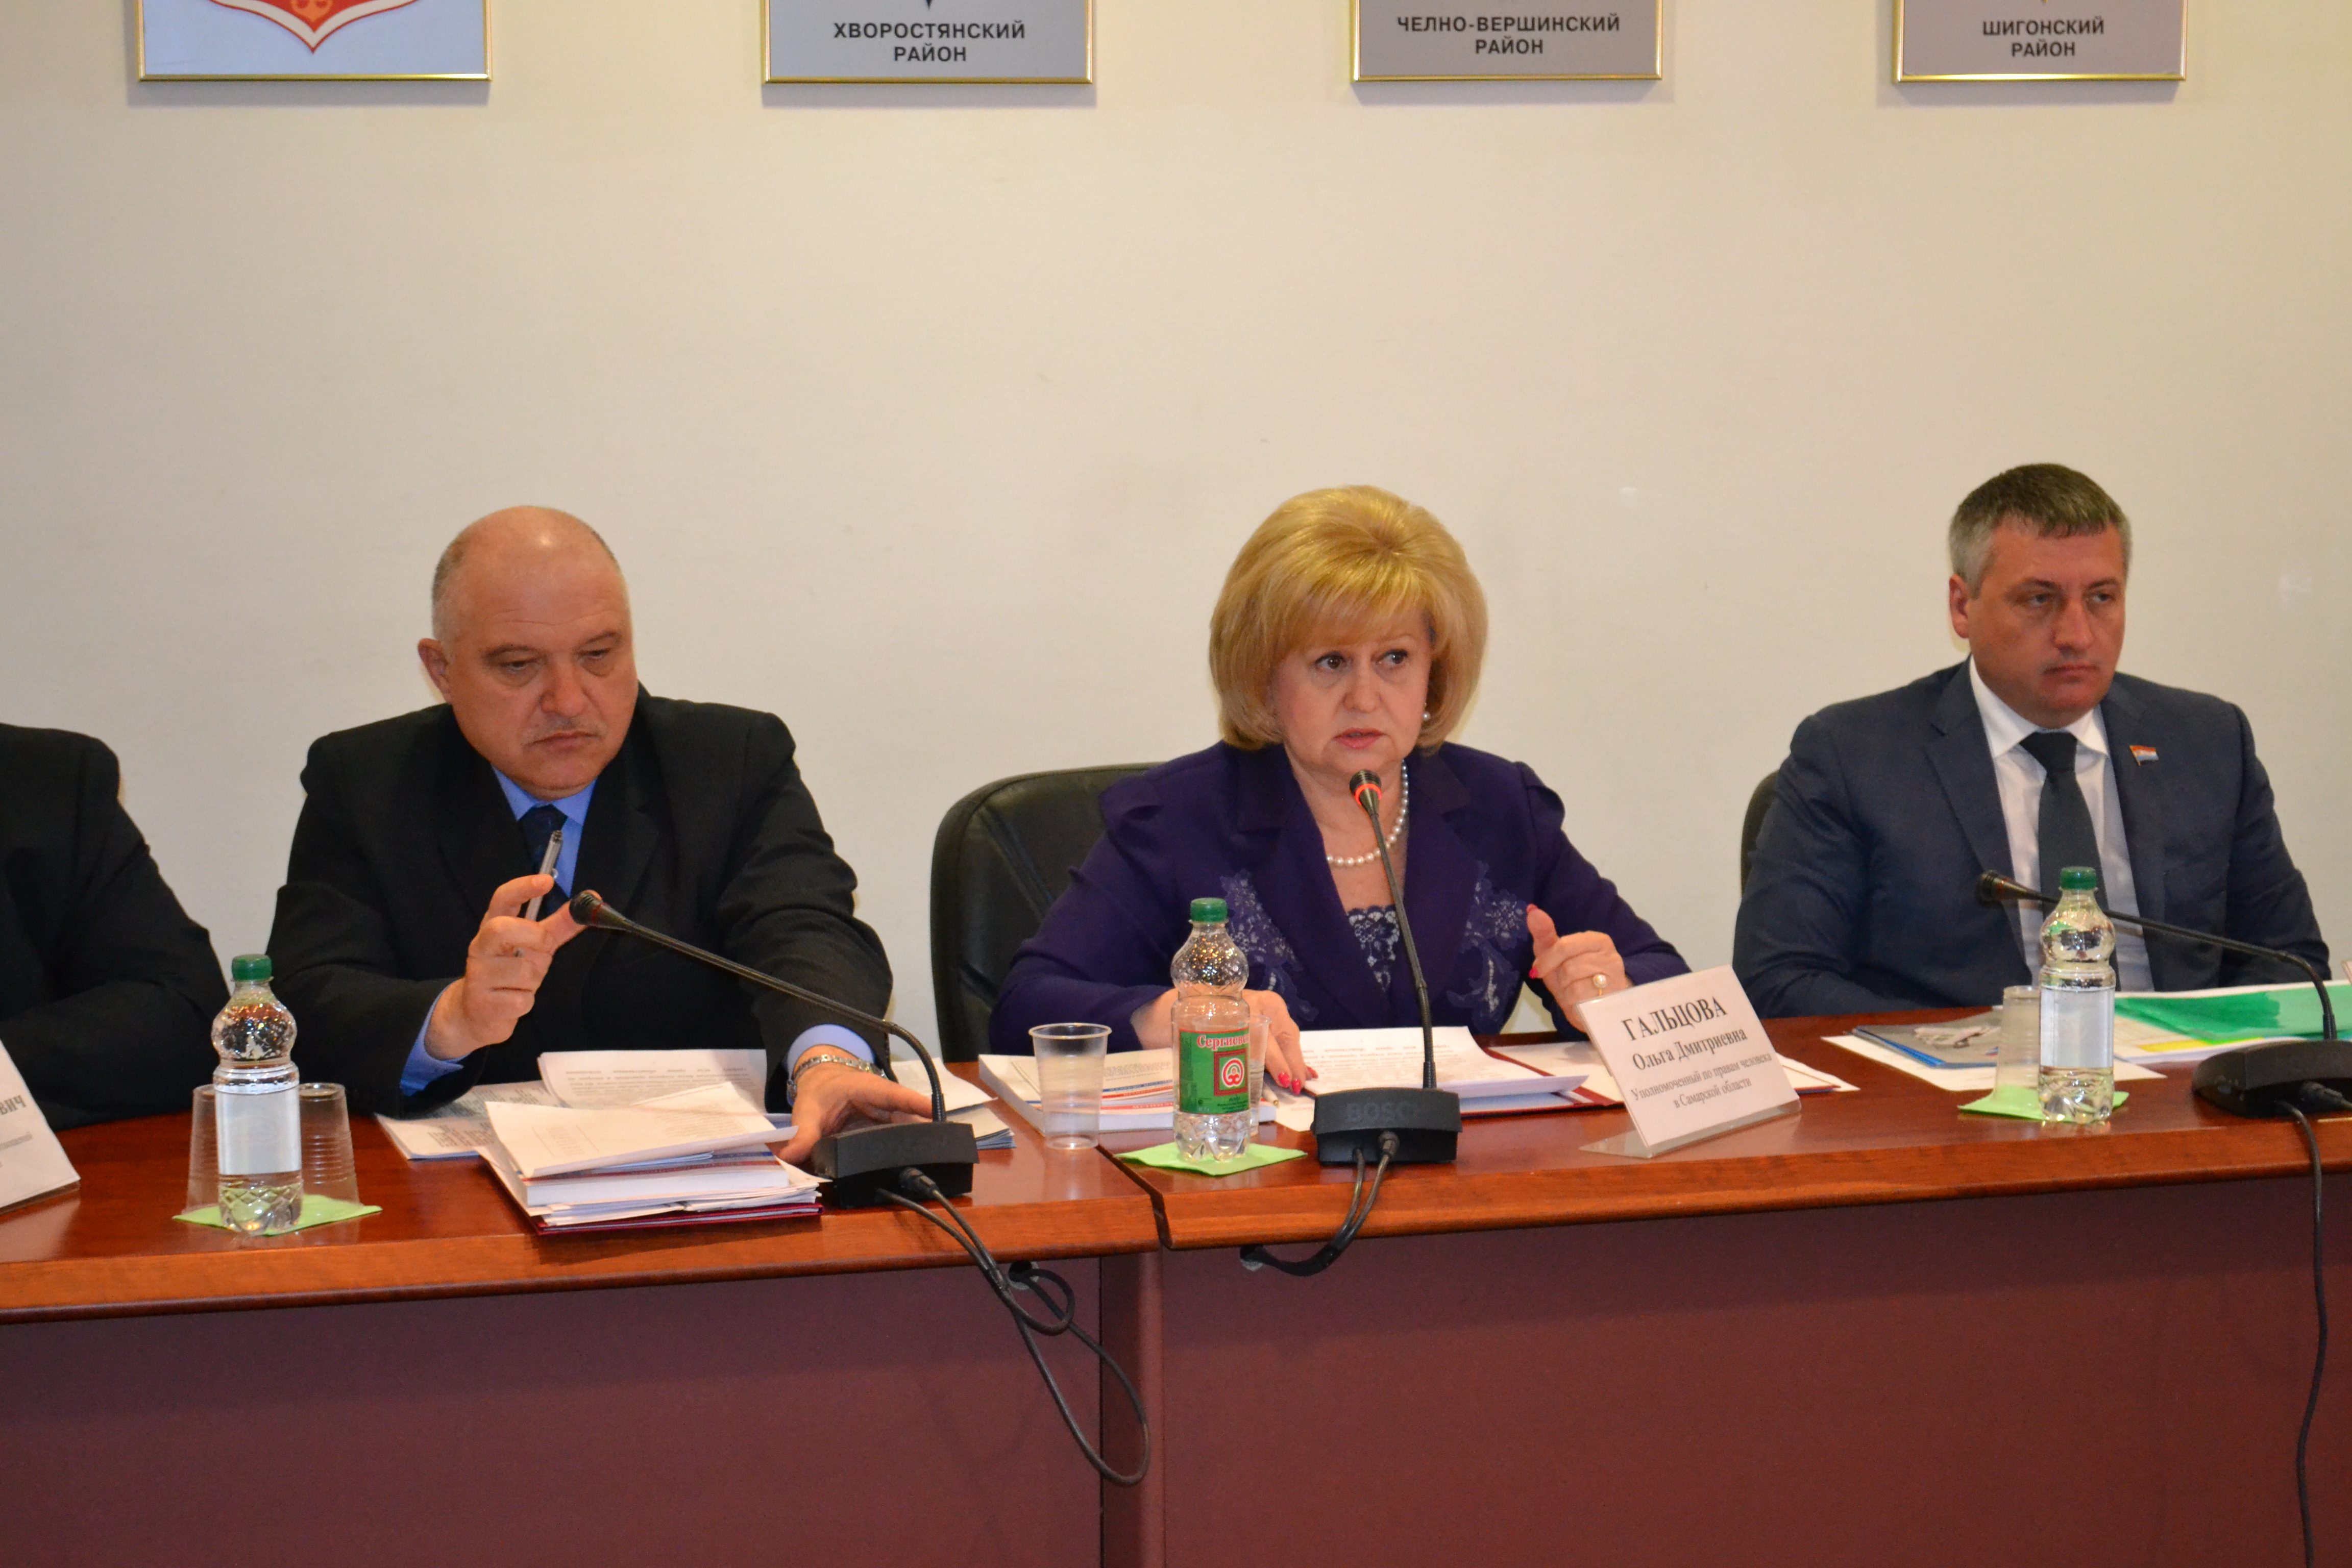 Совместное заседание комитета по местному самоуправлению и комитета по ЖКХ, ТЭК и охране окружающей среды Самарской Губернской Думы